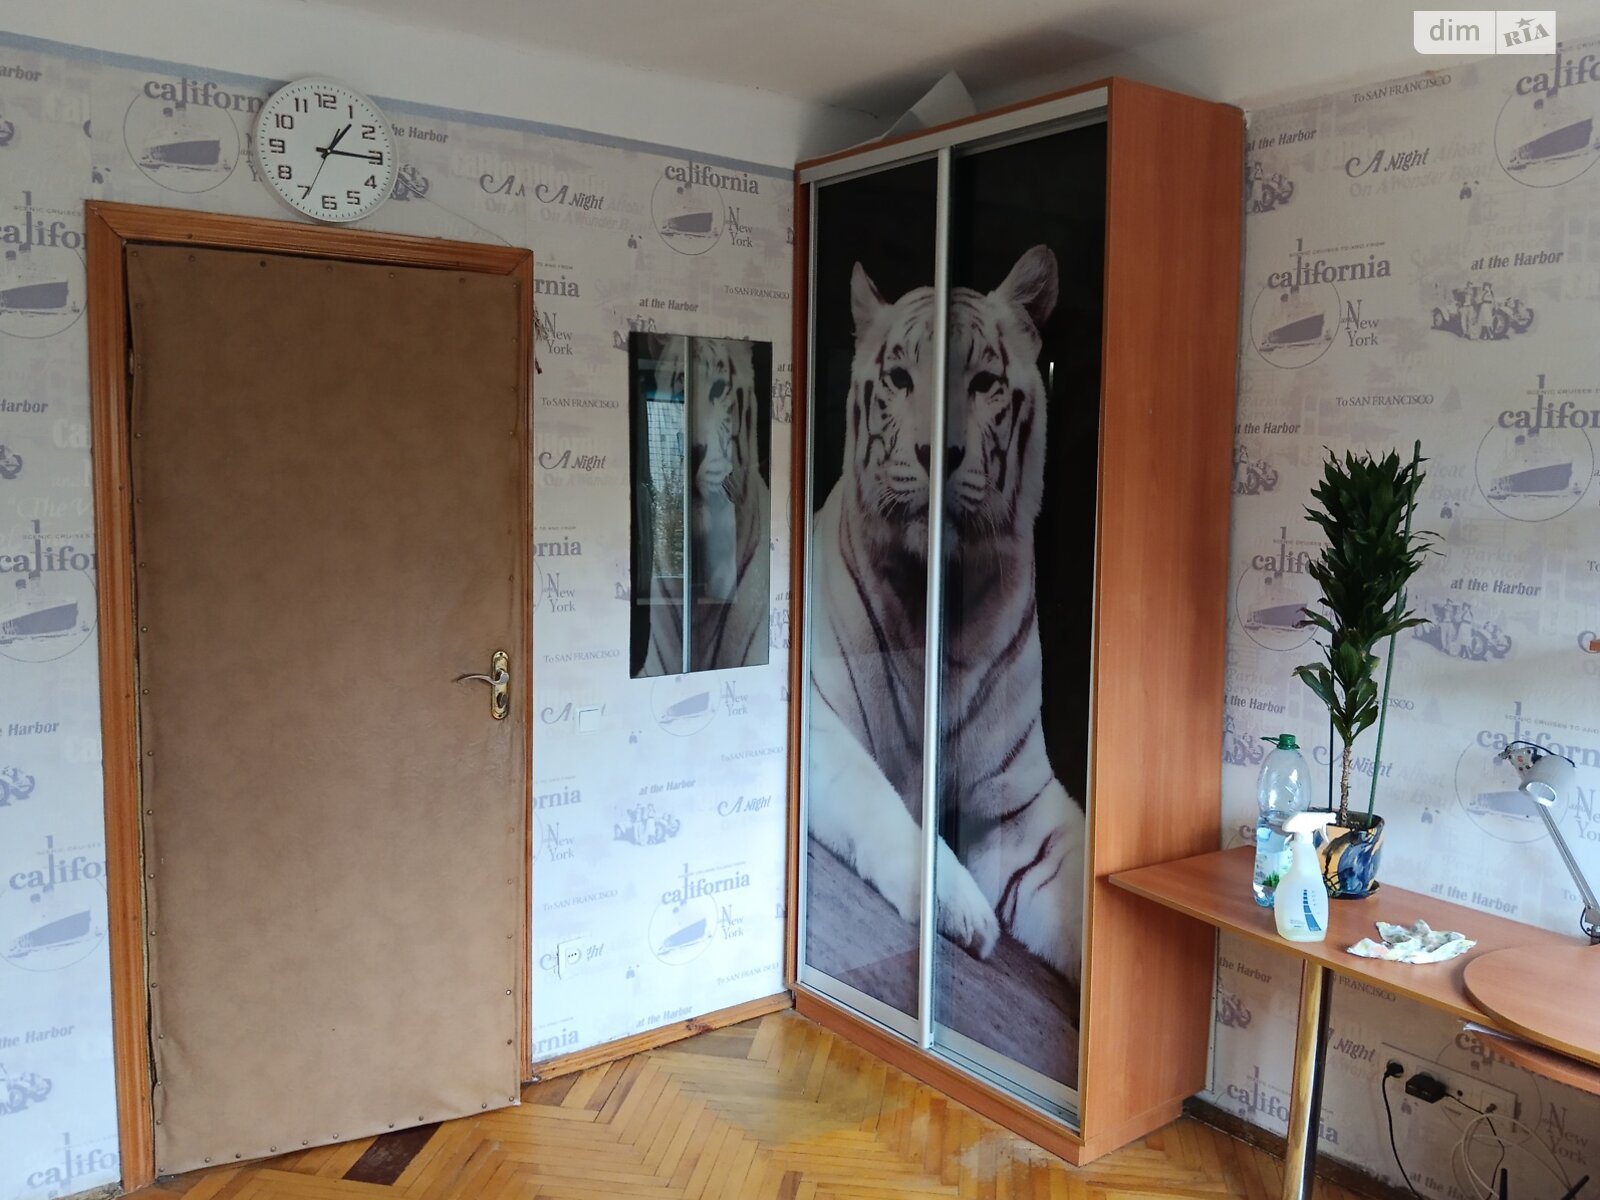 Комната в Киеве, на ул. Академика Доброхотова 6 в районе Святошинский на продажу фото 1